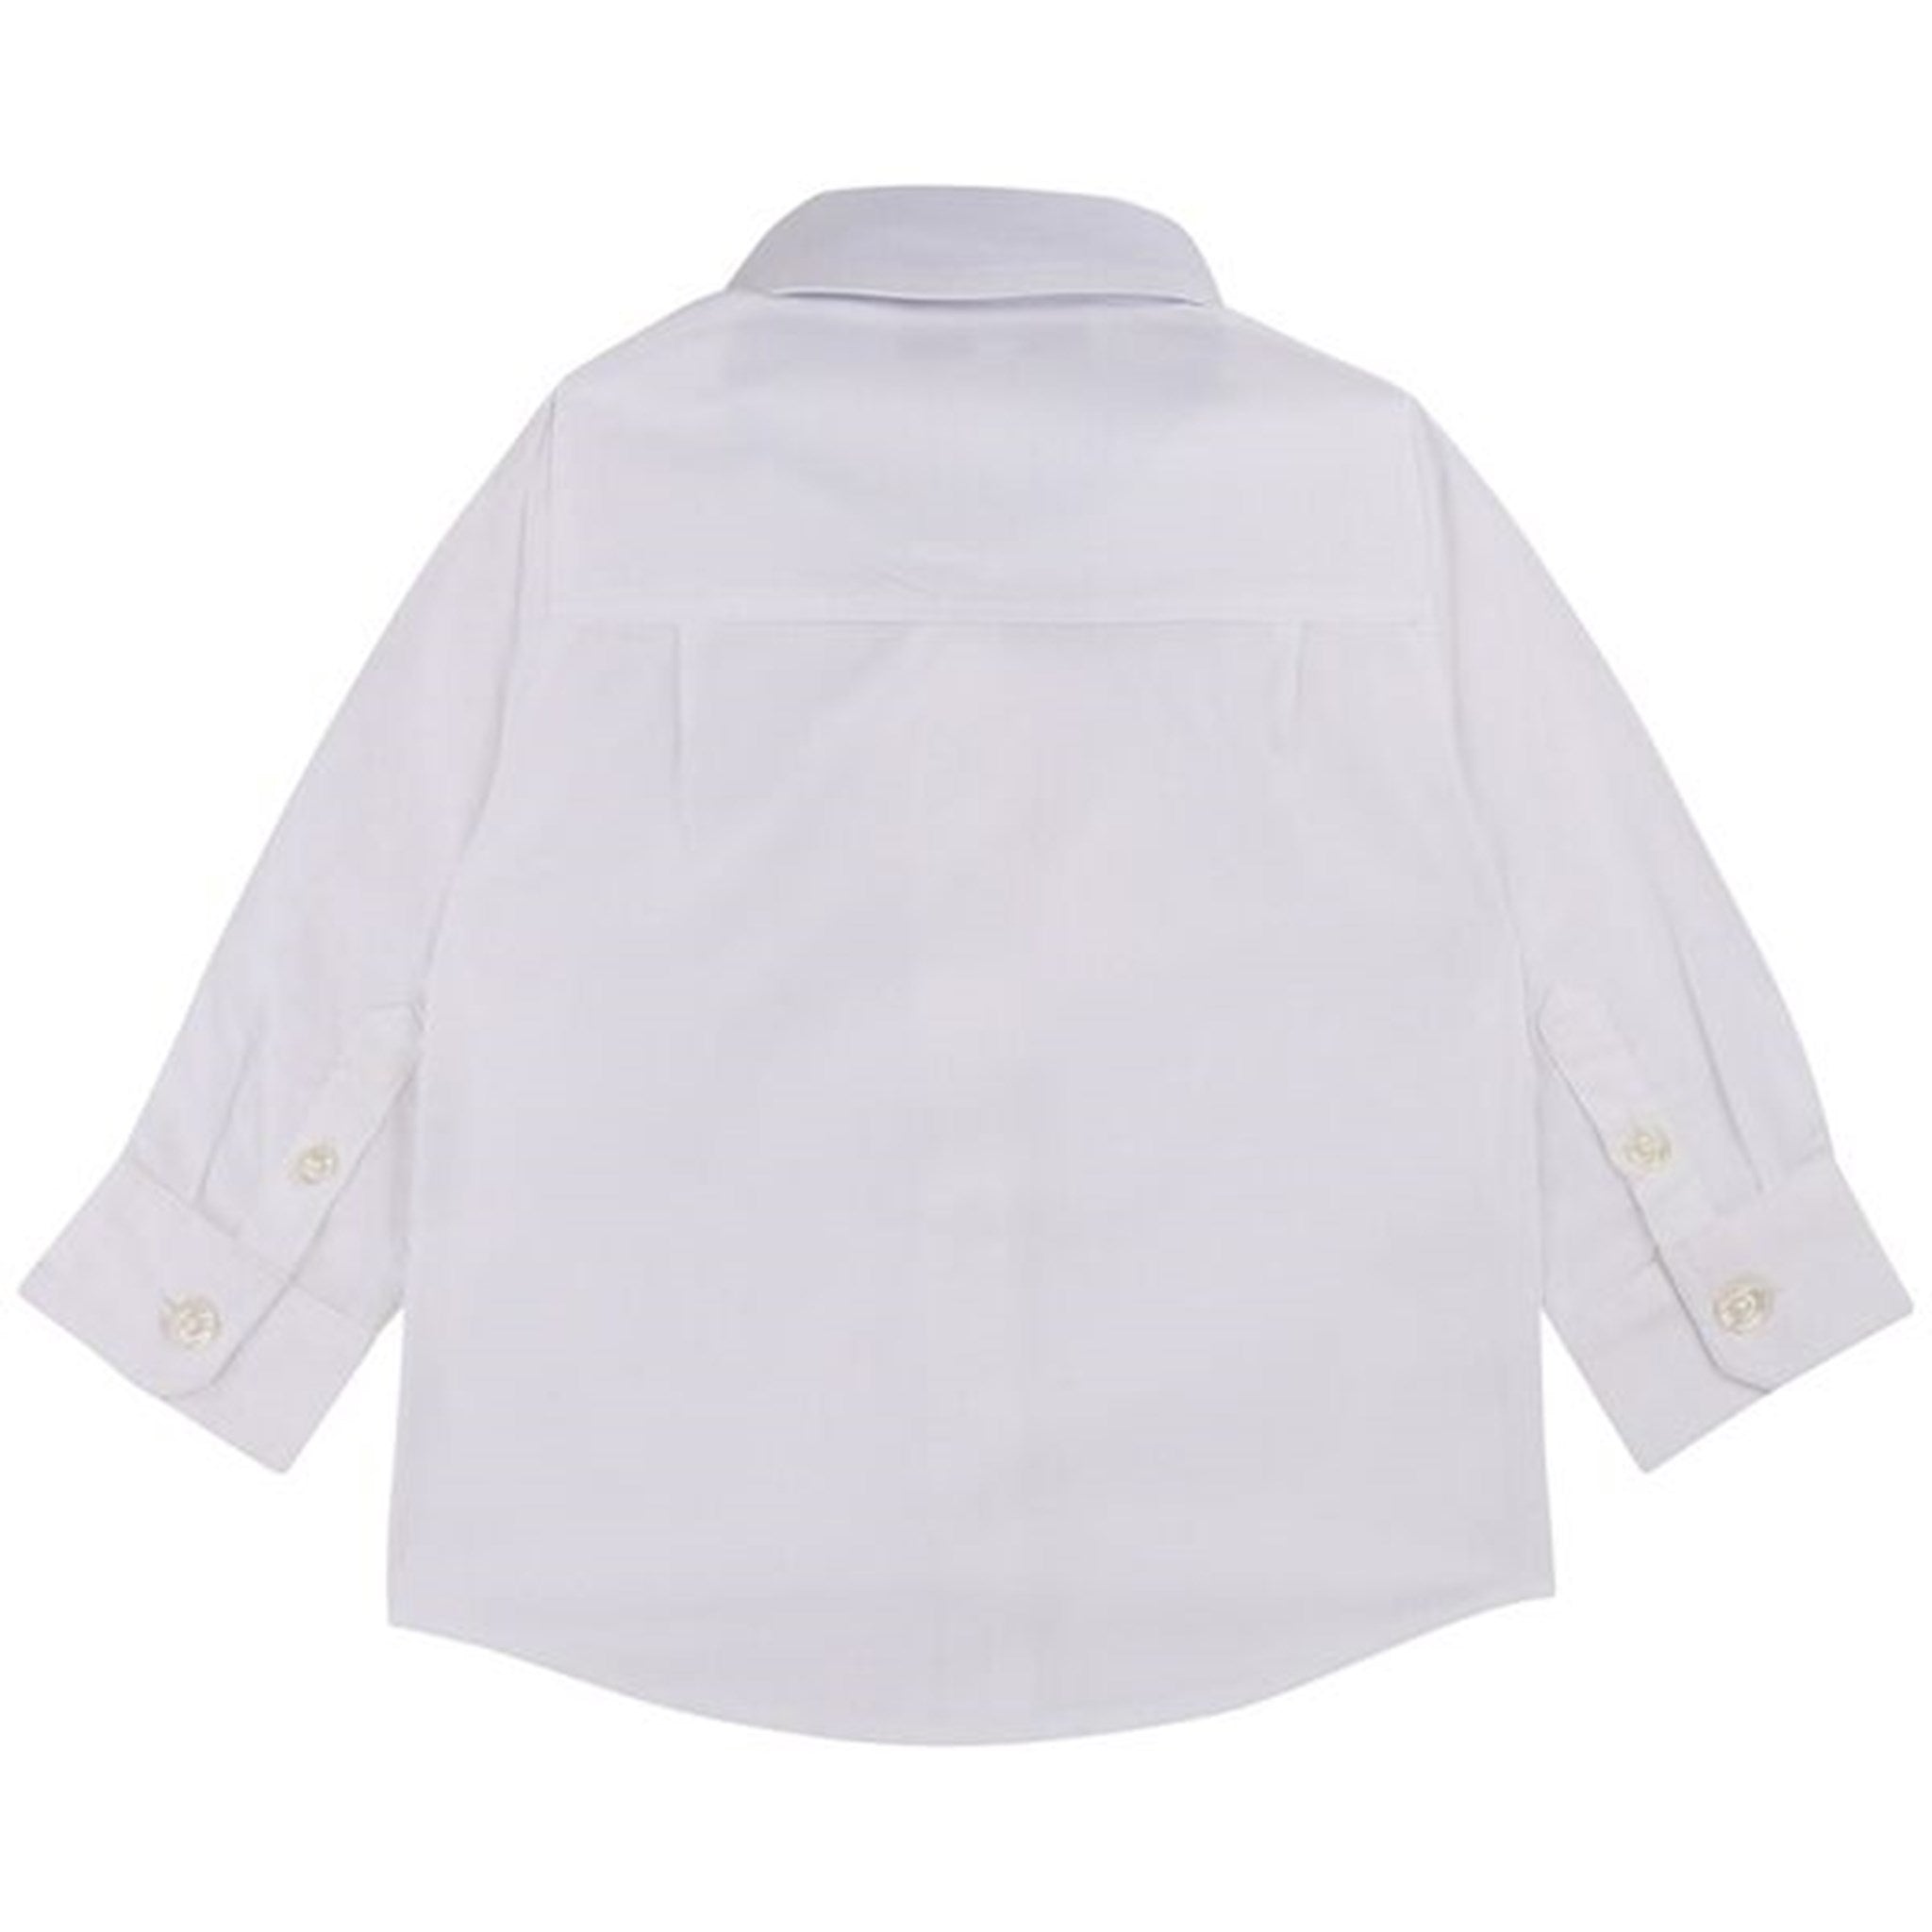 Hugo Boss Baby Long Sleeved Shirt White 2